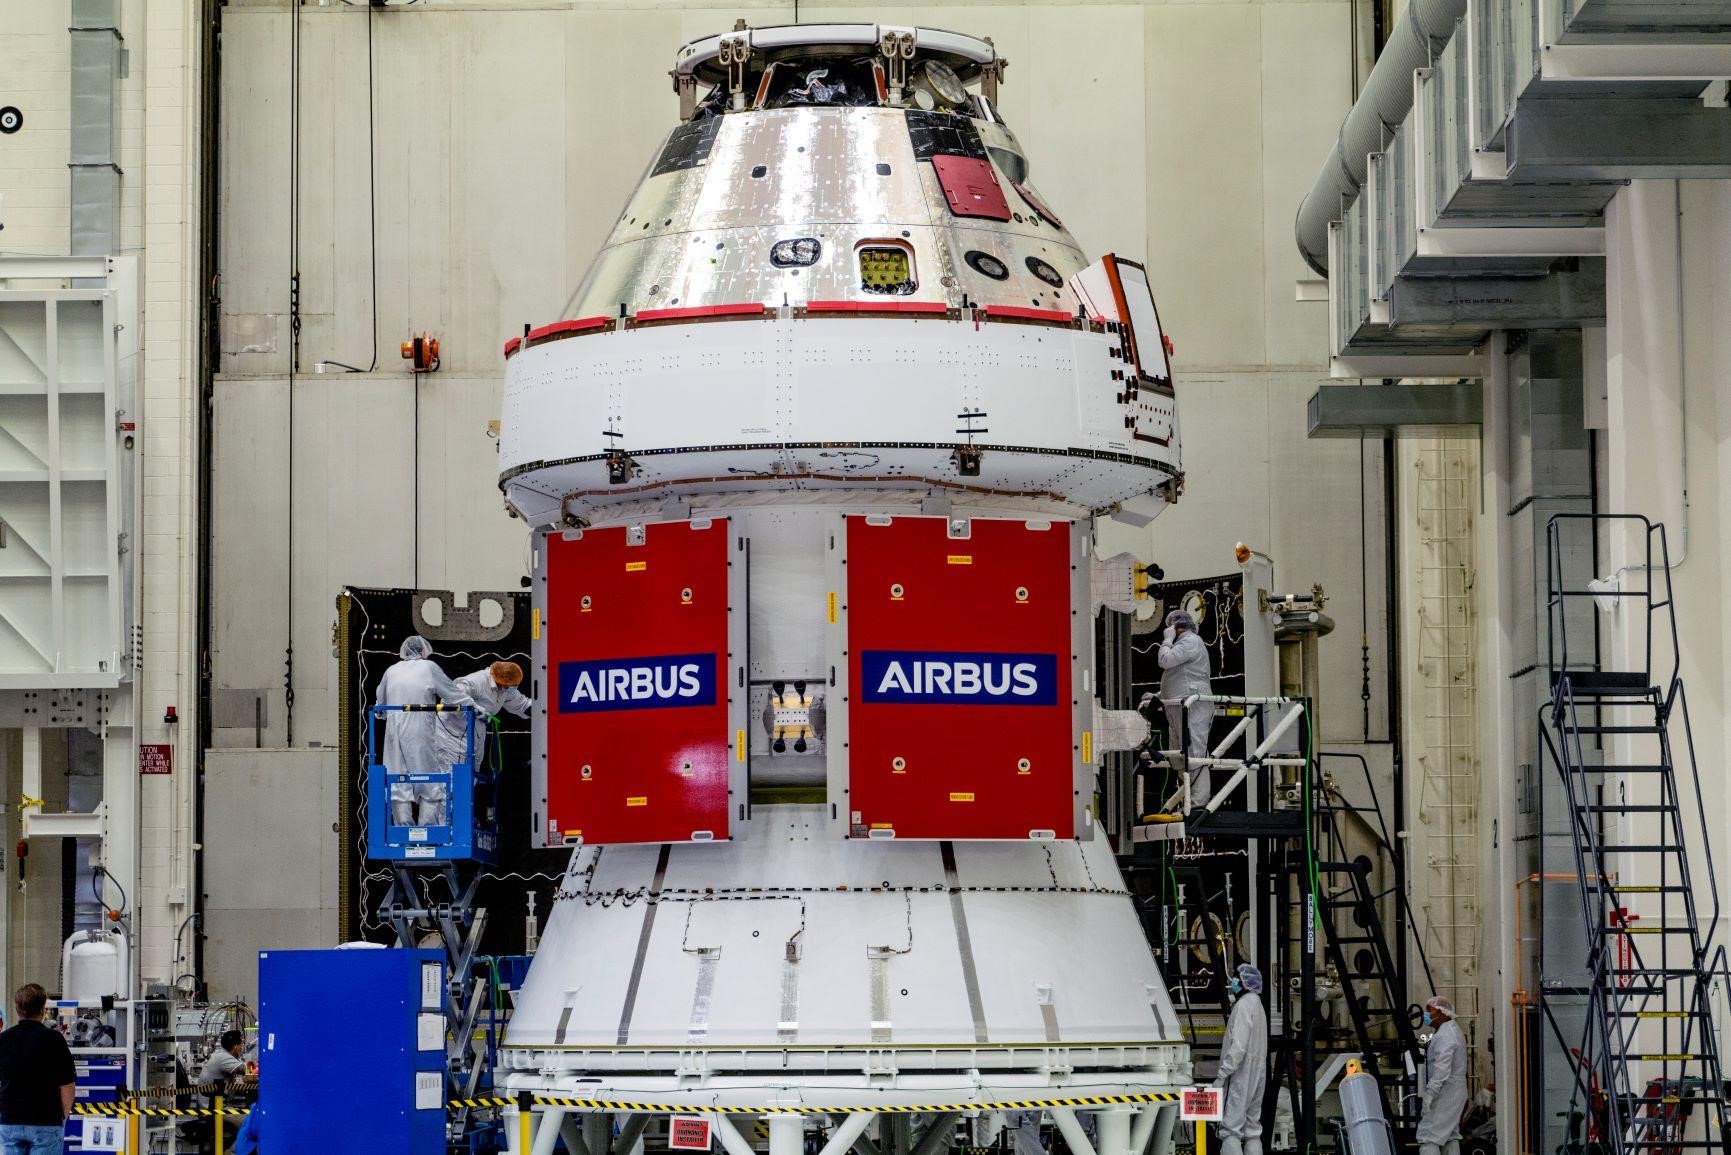 Tutto pronto per la missione lunare Artemis: il modulo di servizio Airbus alimenterà la navicella Orion